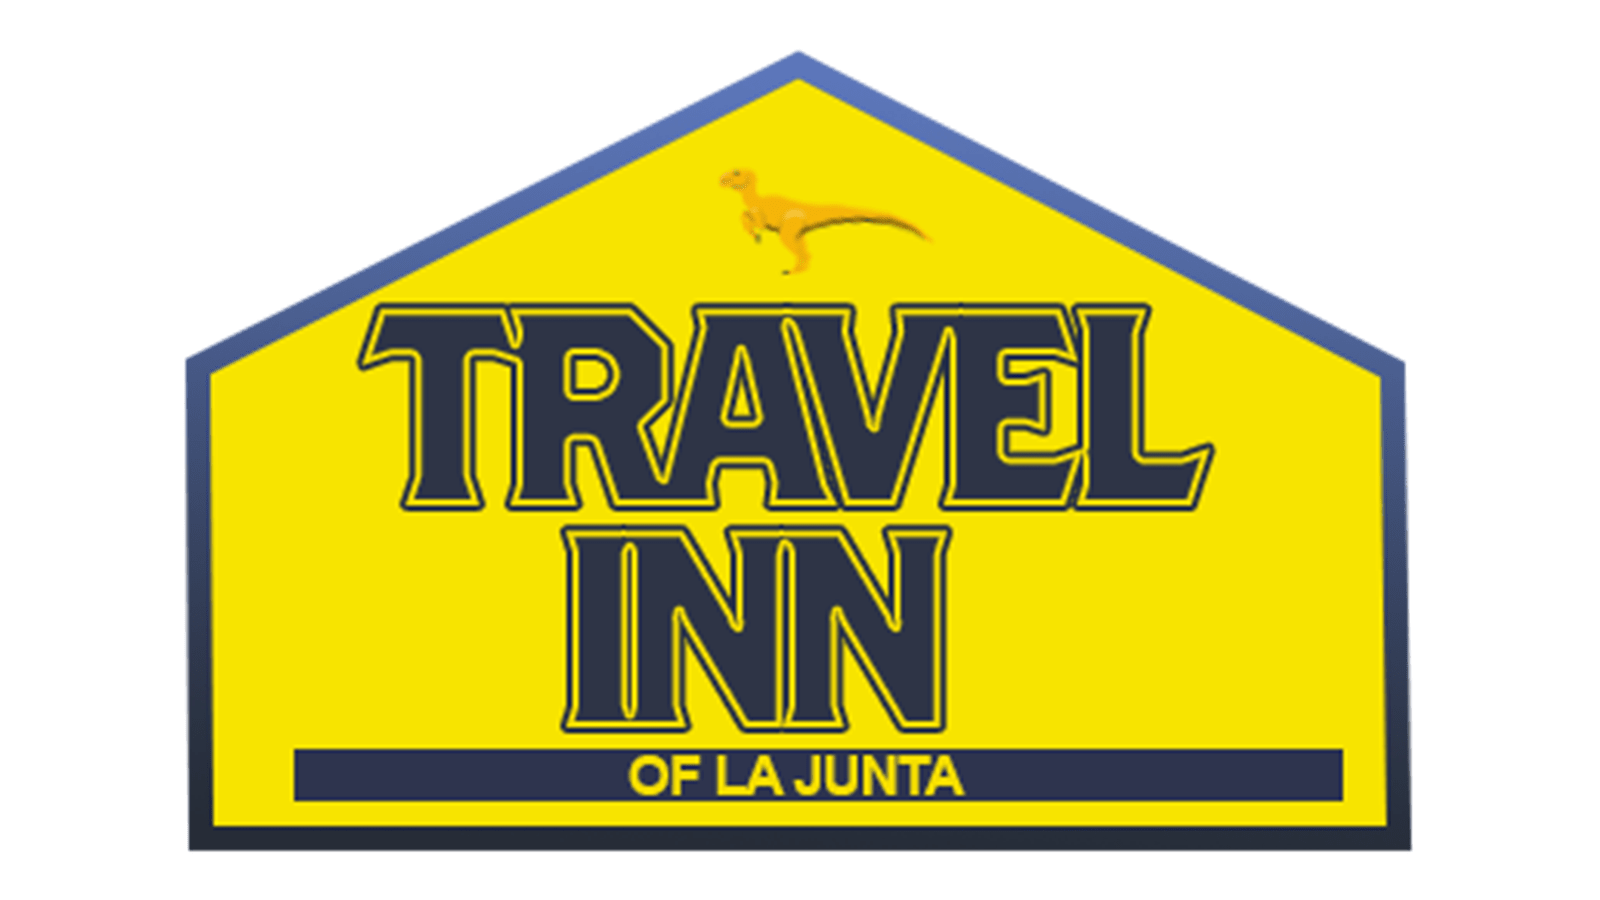 Travel Inn La Junta - 110 E 1st St, La Junta, Colorado - 81050, USA